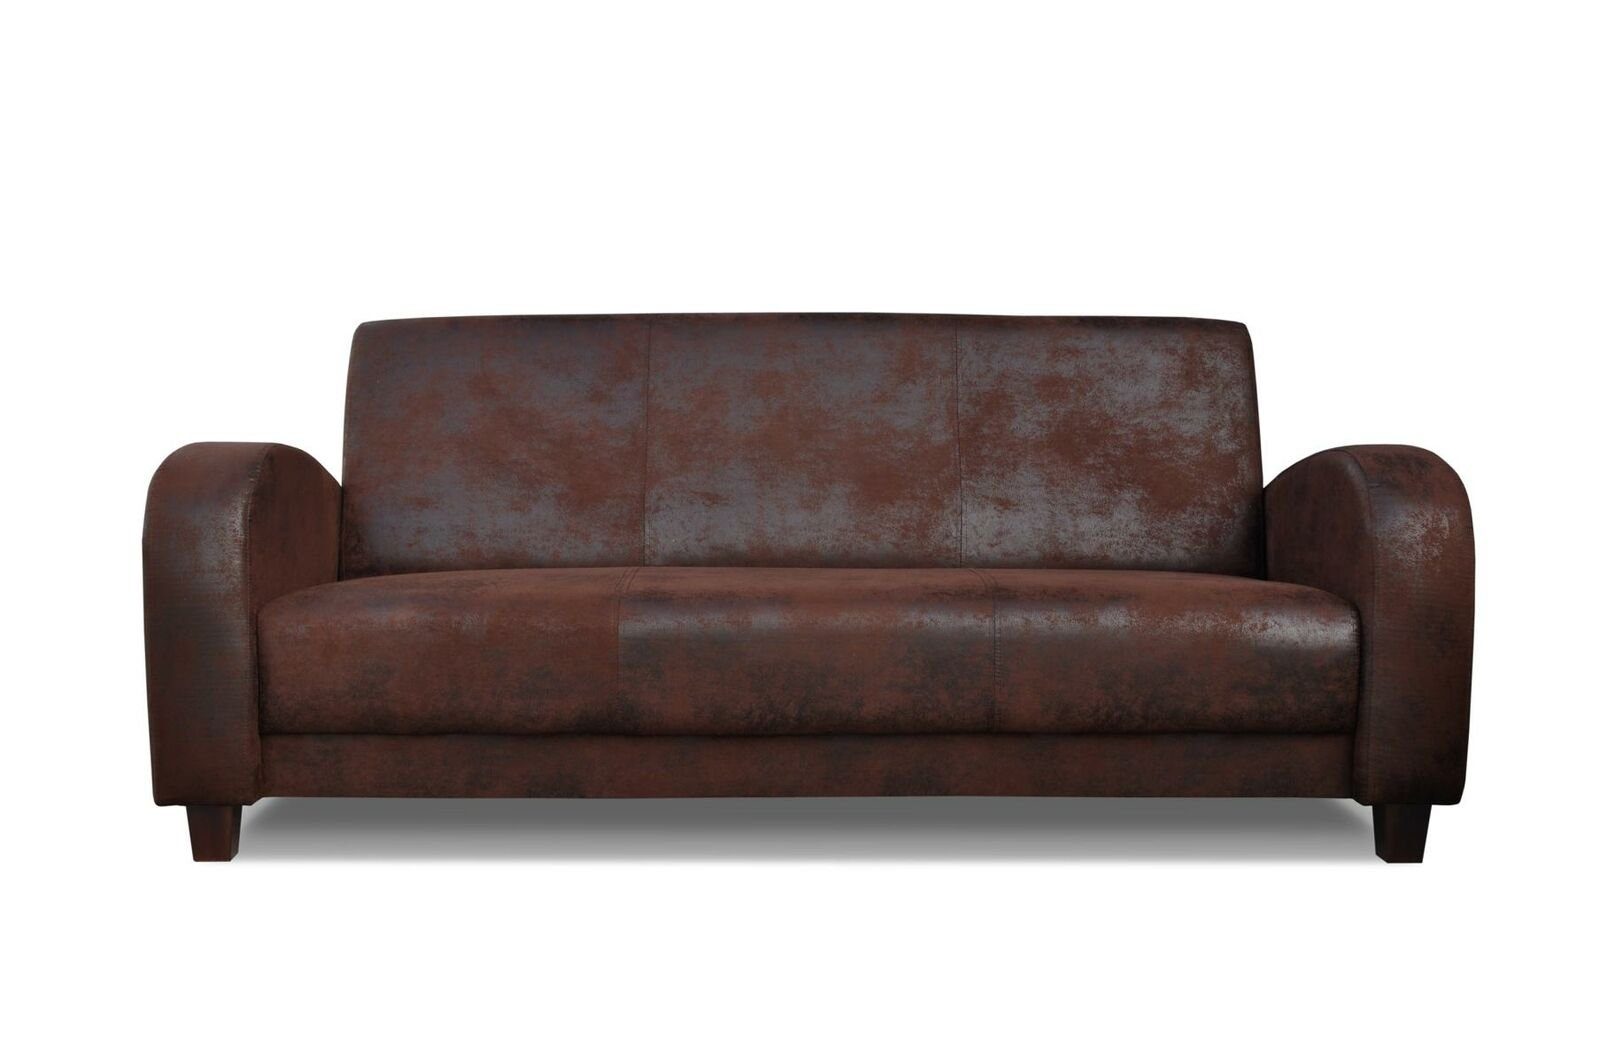 JVmoebel Sofa Vintages Europe Polstermöbel Set Ledersofa Set in Couch Made Neu, 3+2+1 Sitzer